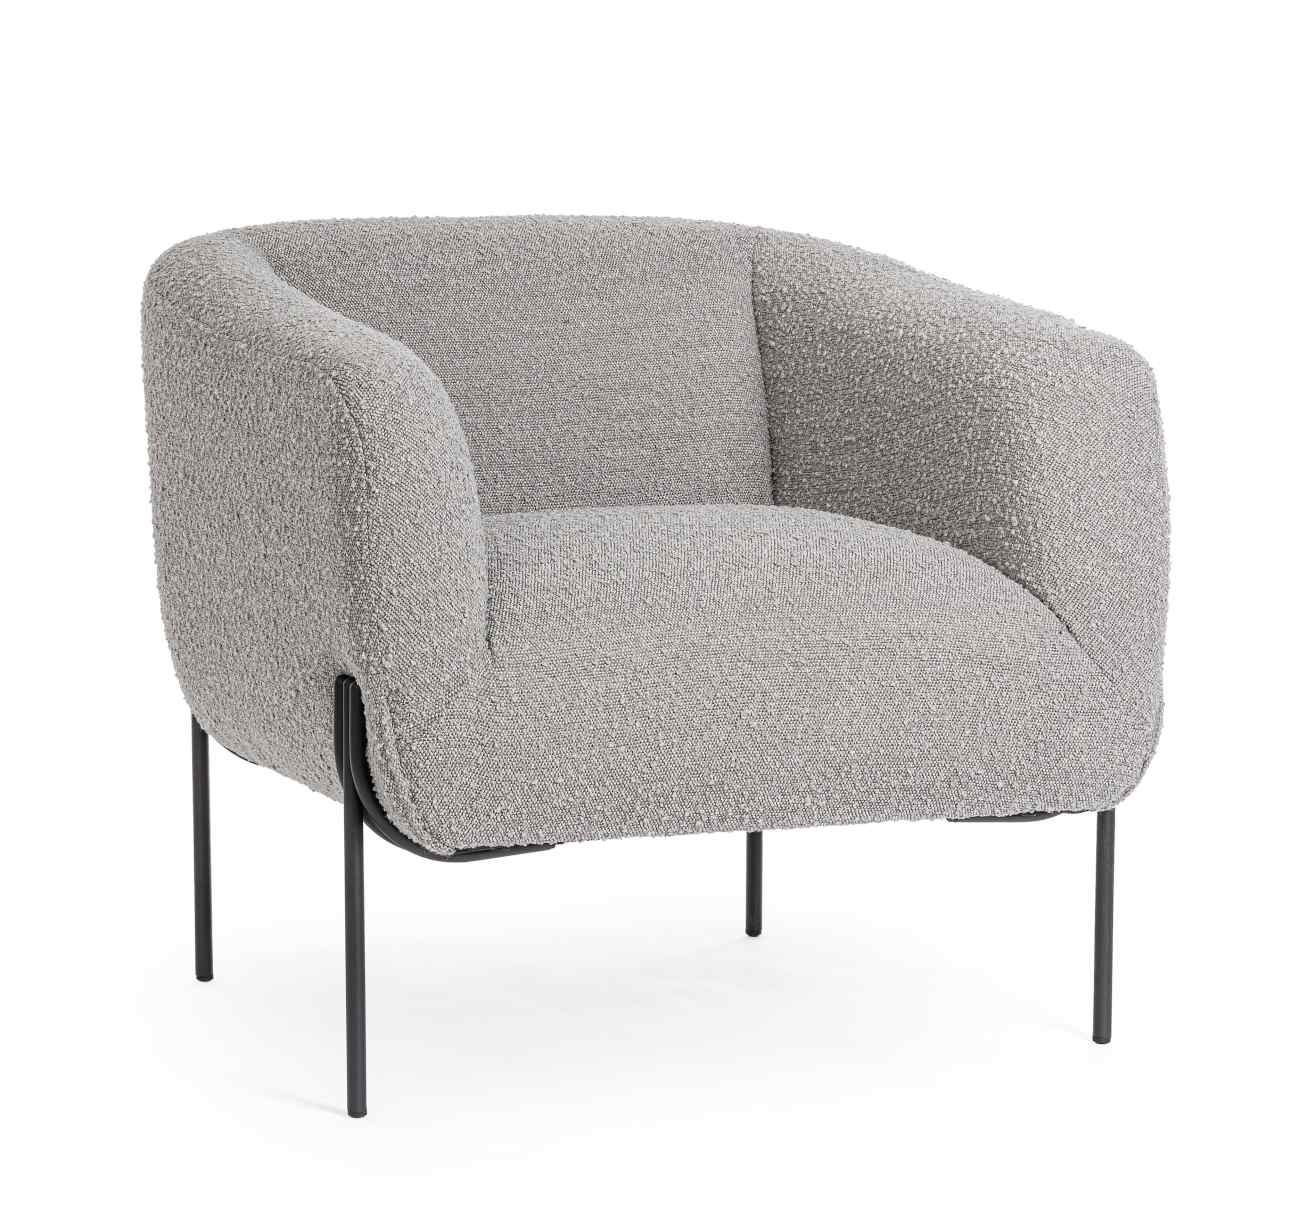 Der Sessel Claudine überzeugt mit seinem modernen Stil. Gefertigt wurde er aus Bouclè-Stoff, welcher einen grauen Farbton besitzt. Das Gestell ist aus Metall und hat eine schwarze Farbe. Der Sessel verfügt über eine Armlehne.